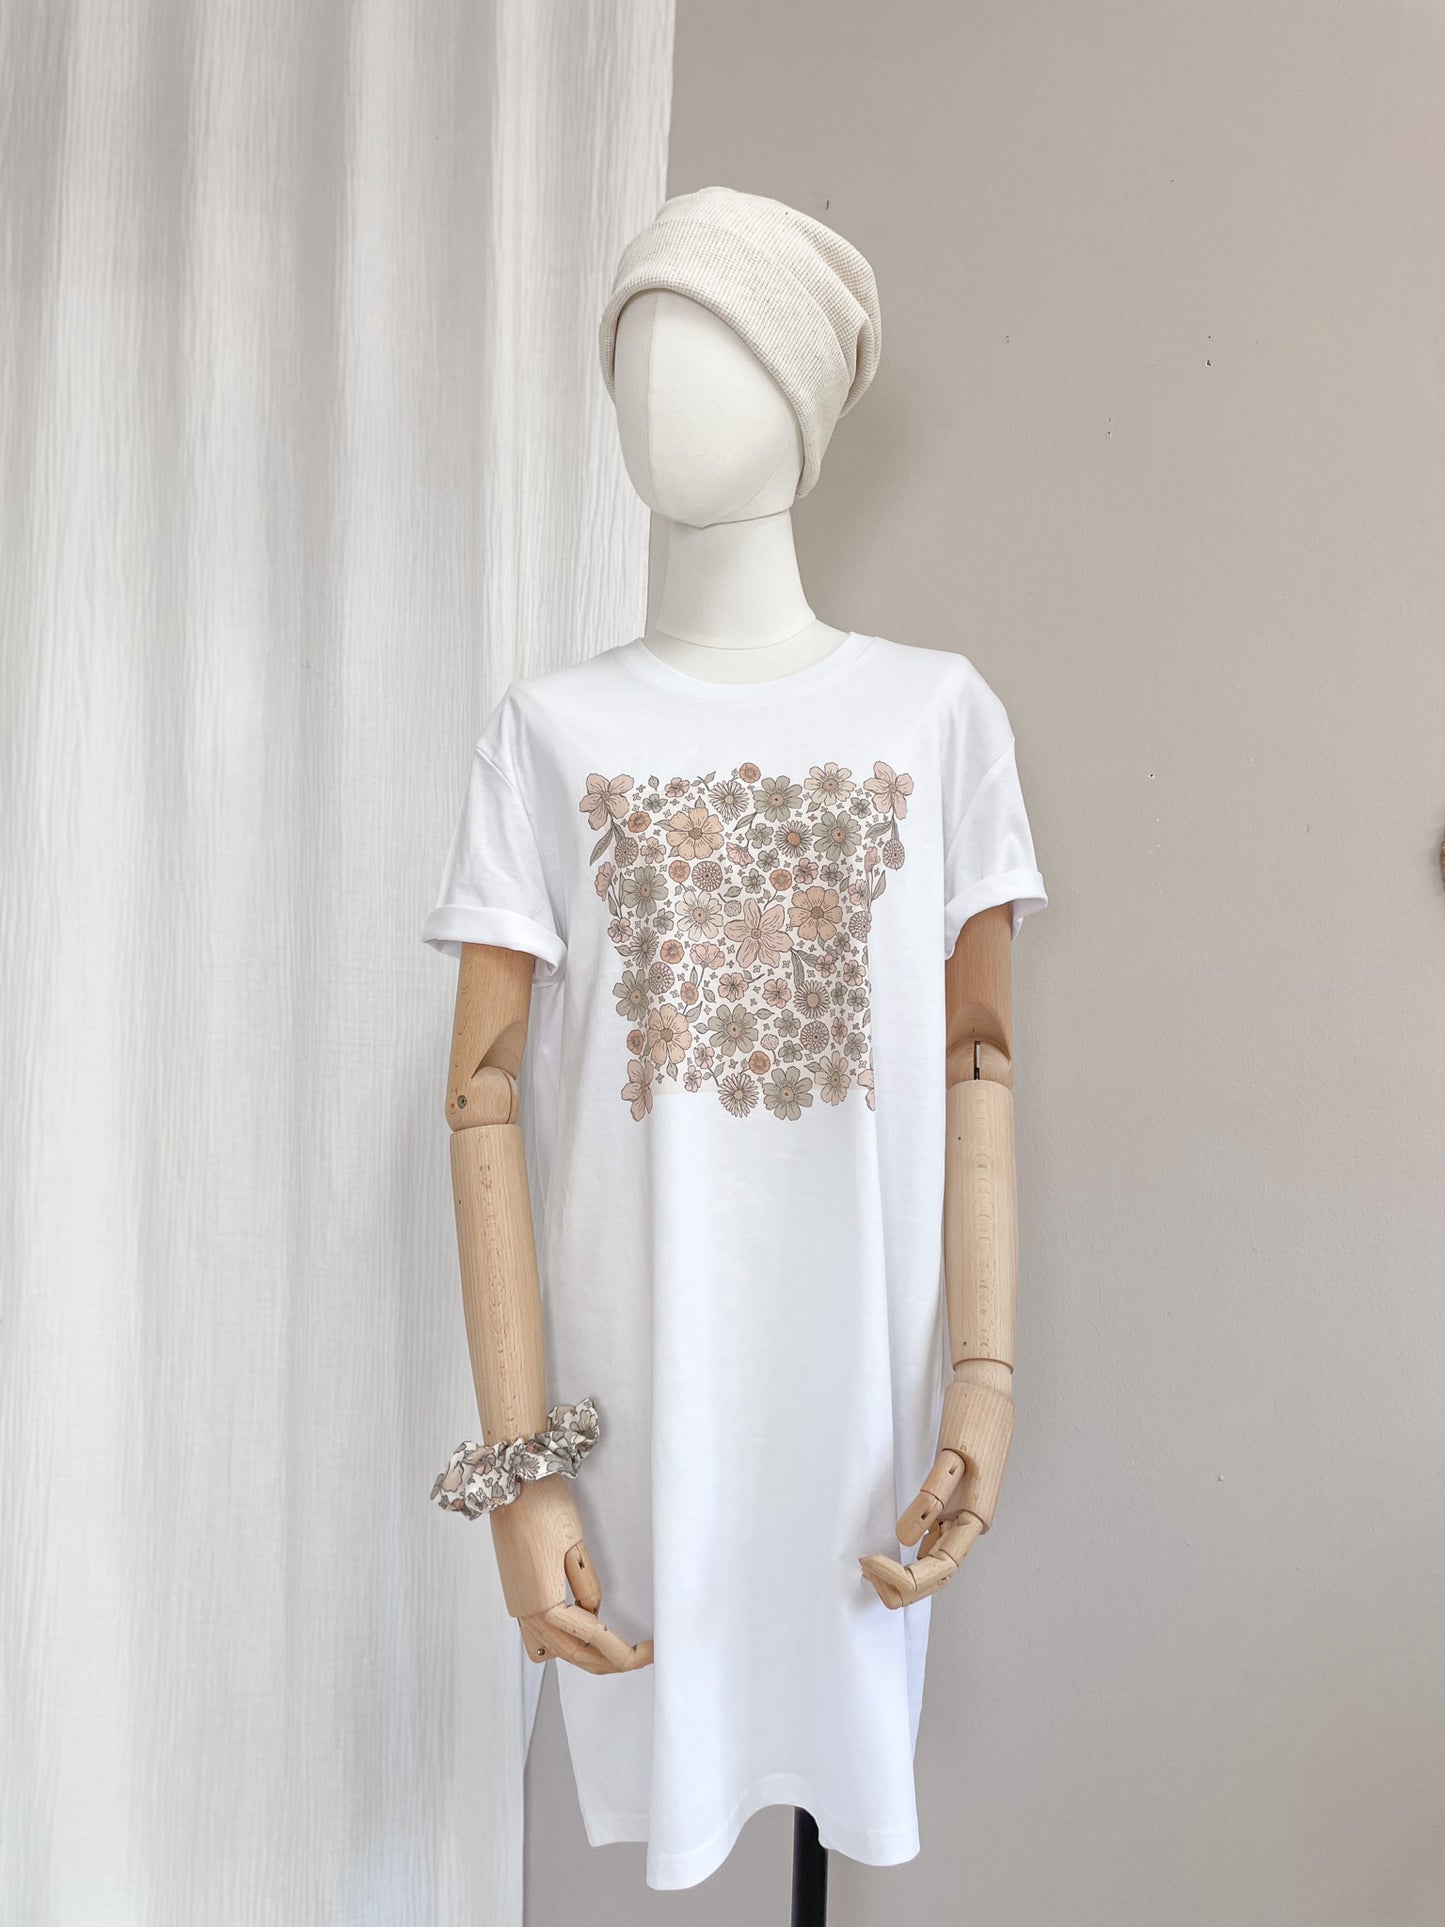 T-shirt dress / Ecru bold floral / white